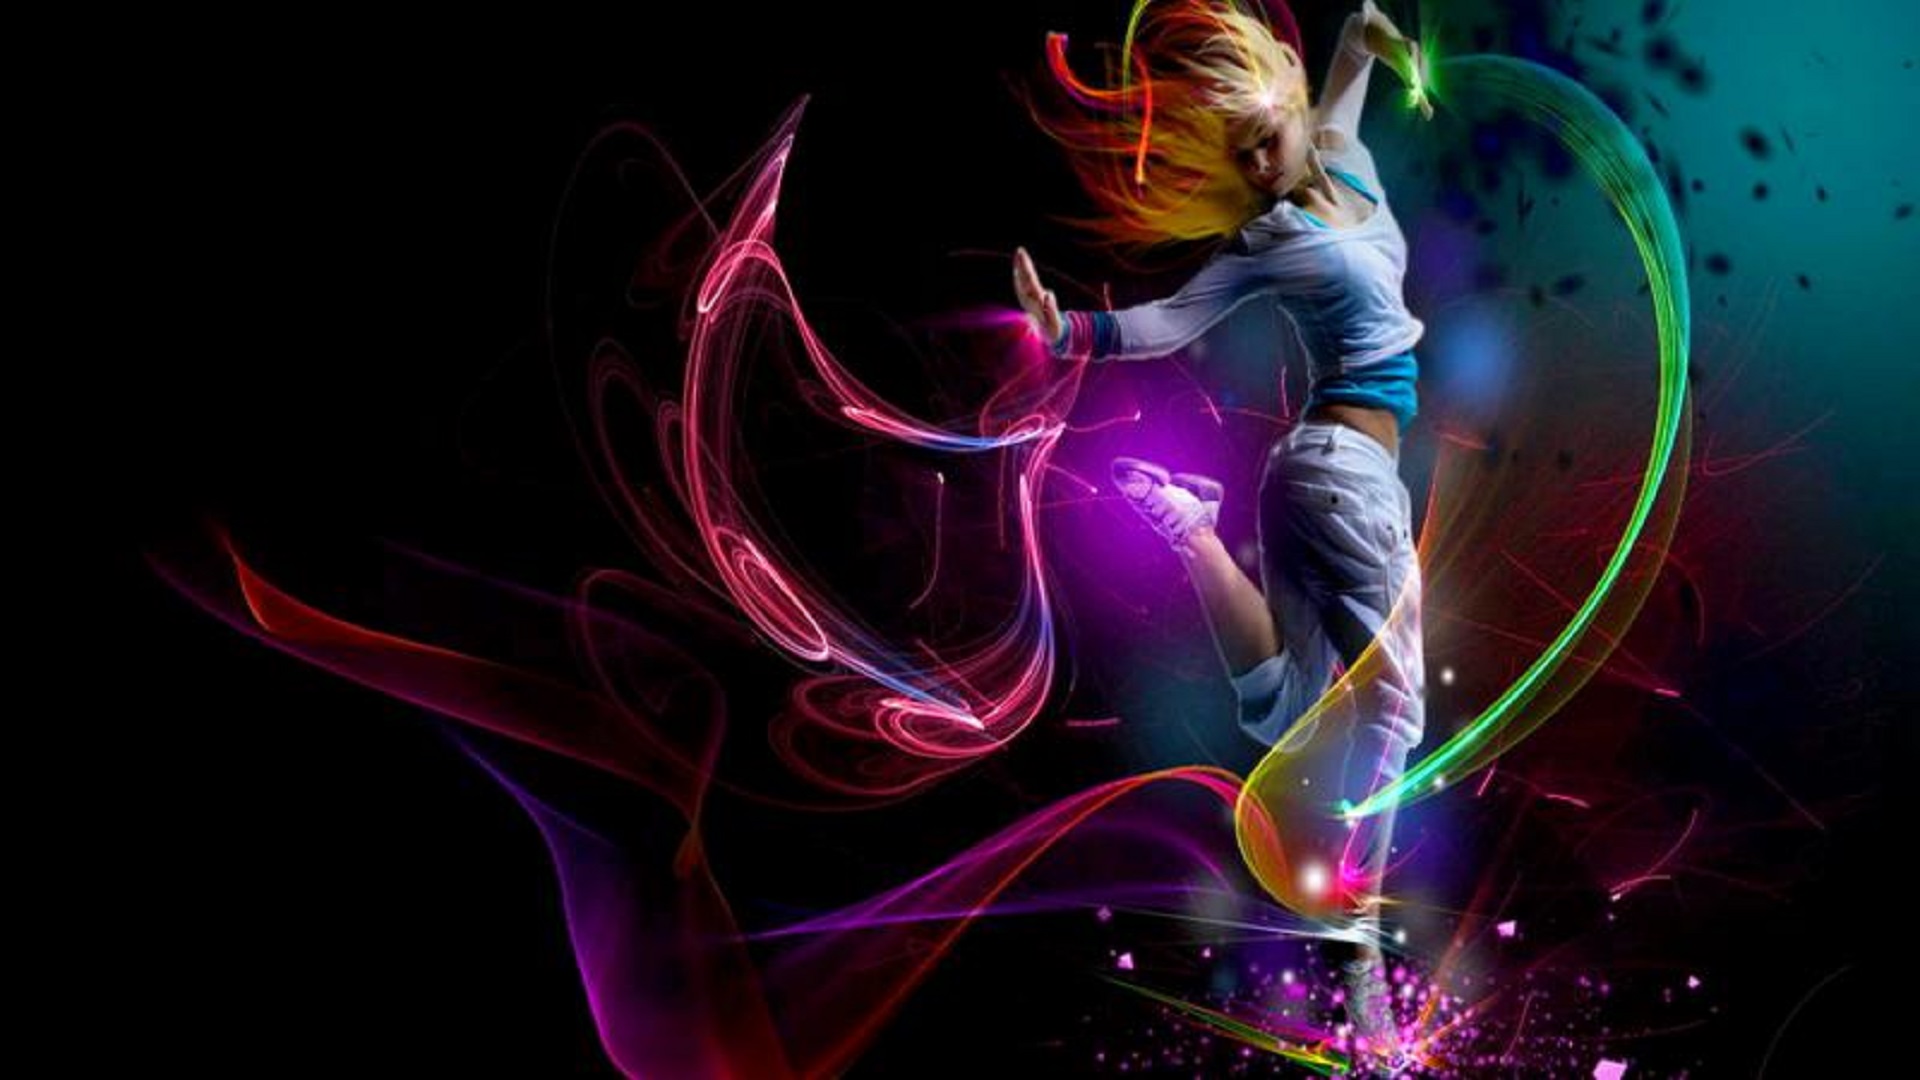 3d abstract hdwallpaper dancing girl free hd 4k background wallpaperss for desktop